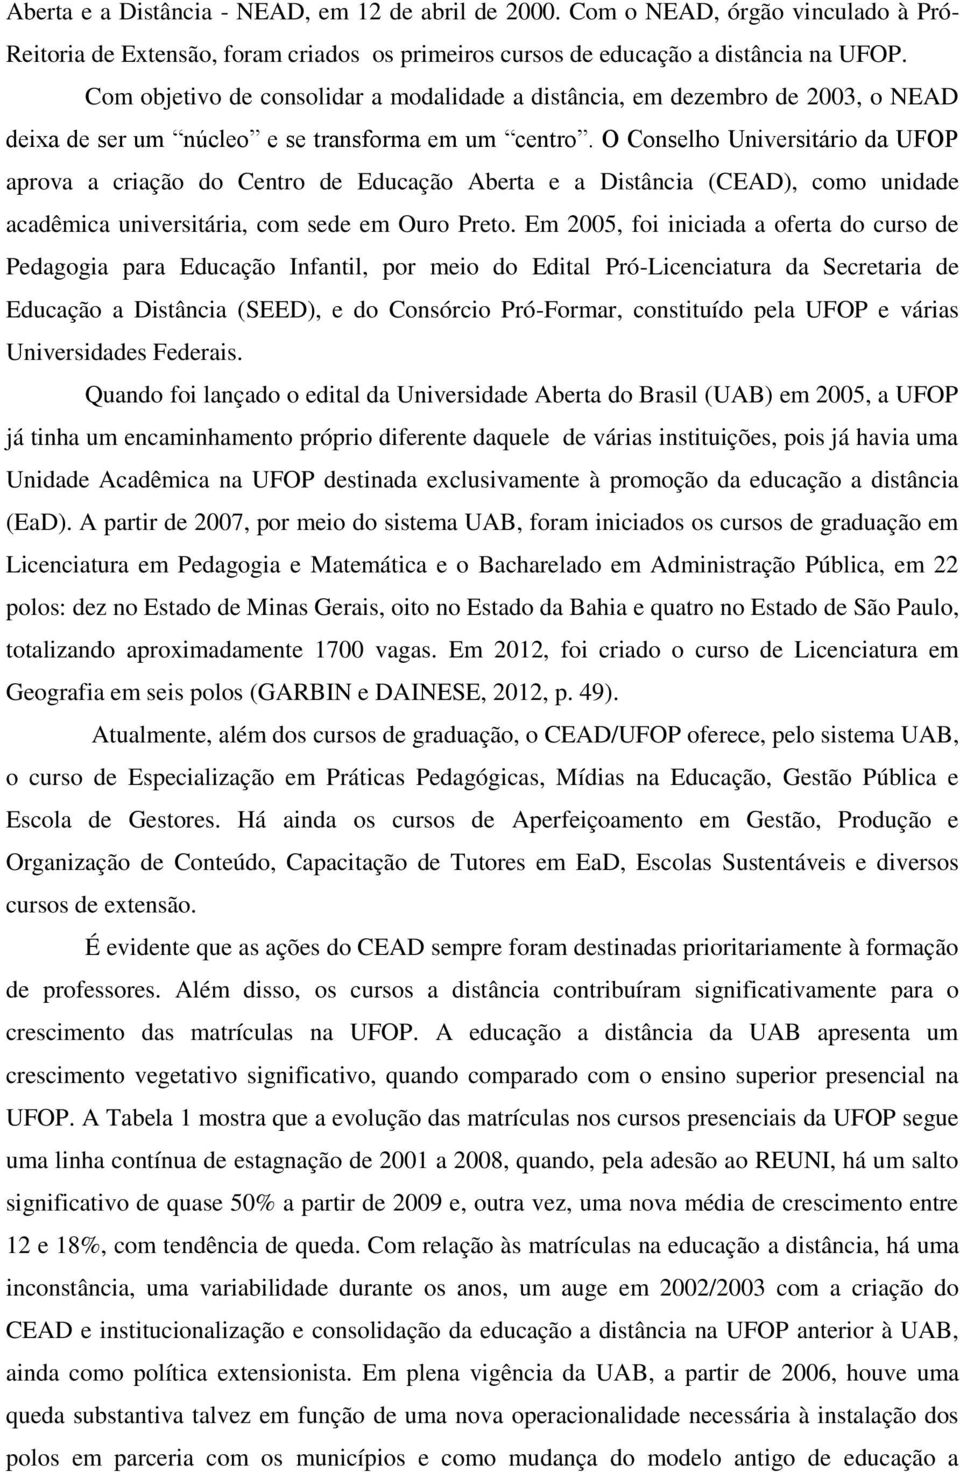 O Conselho Universitário da UFOP aprova a criação do Centro de Educação Aberta e a Distância (CEAD), como unidade acadêmica universitária, com sede em Ouro Preto.